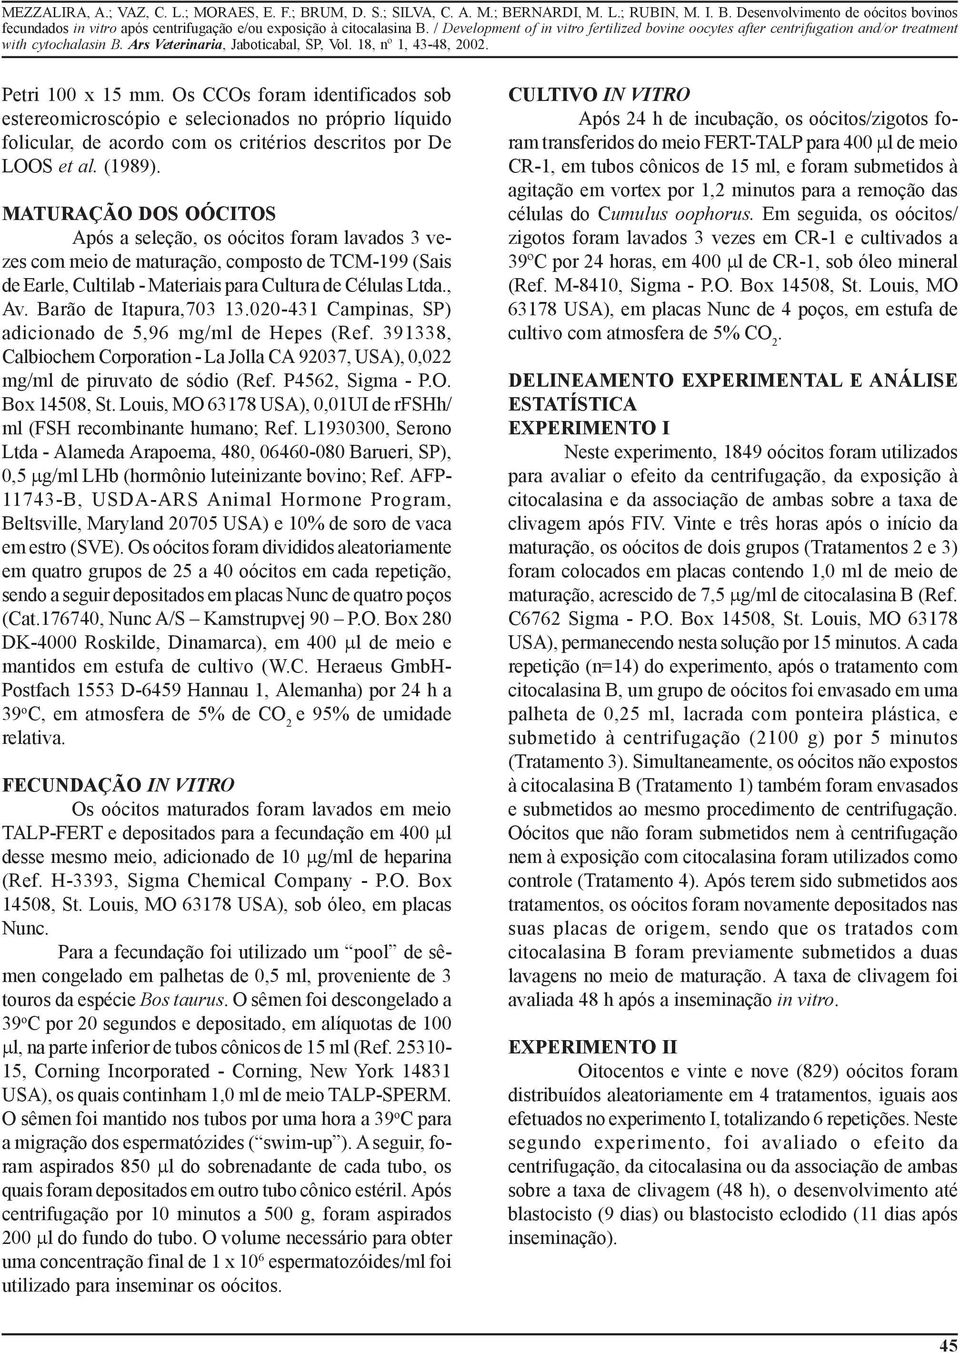 Barão de Itapura,703 13.020-431 Campinas, SP) adicionado de 5,96 mg/ml de Hepes (Ref. 391338, Calbiochem Corporation - La Jolla CA 92037, USA), 0,022 mg/ml de piruvato de sódio (Ref. P4562, Sigma - P.